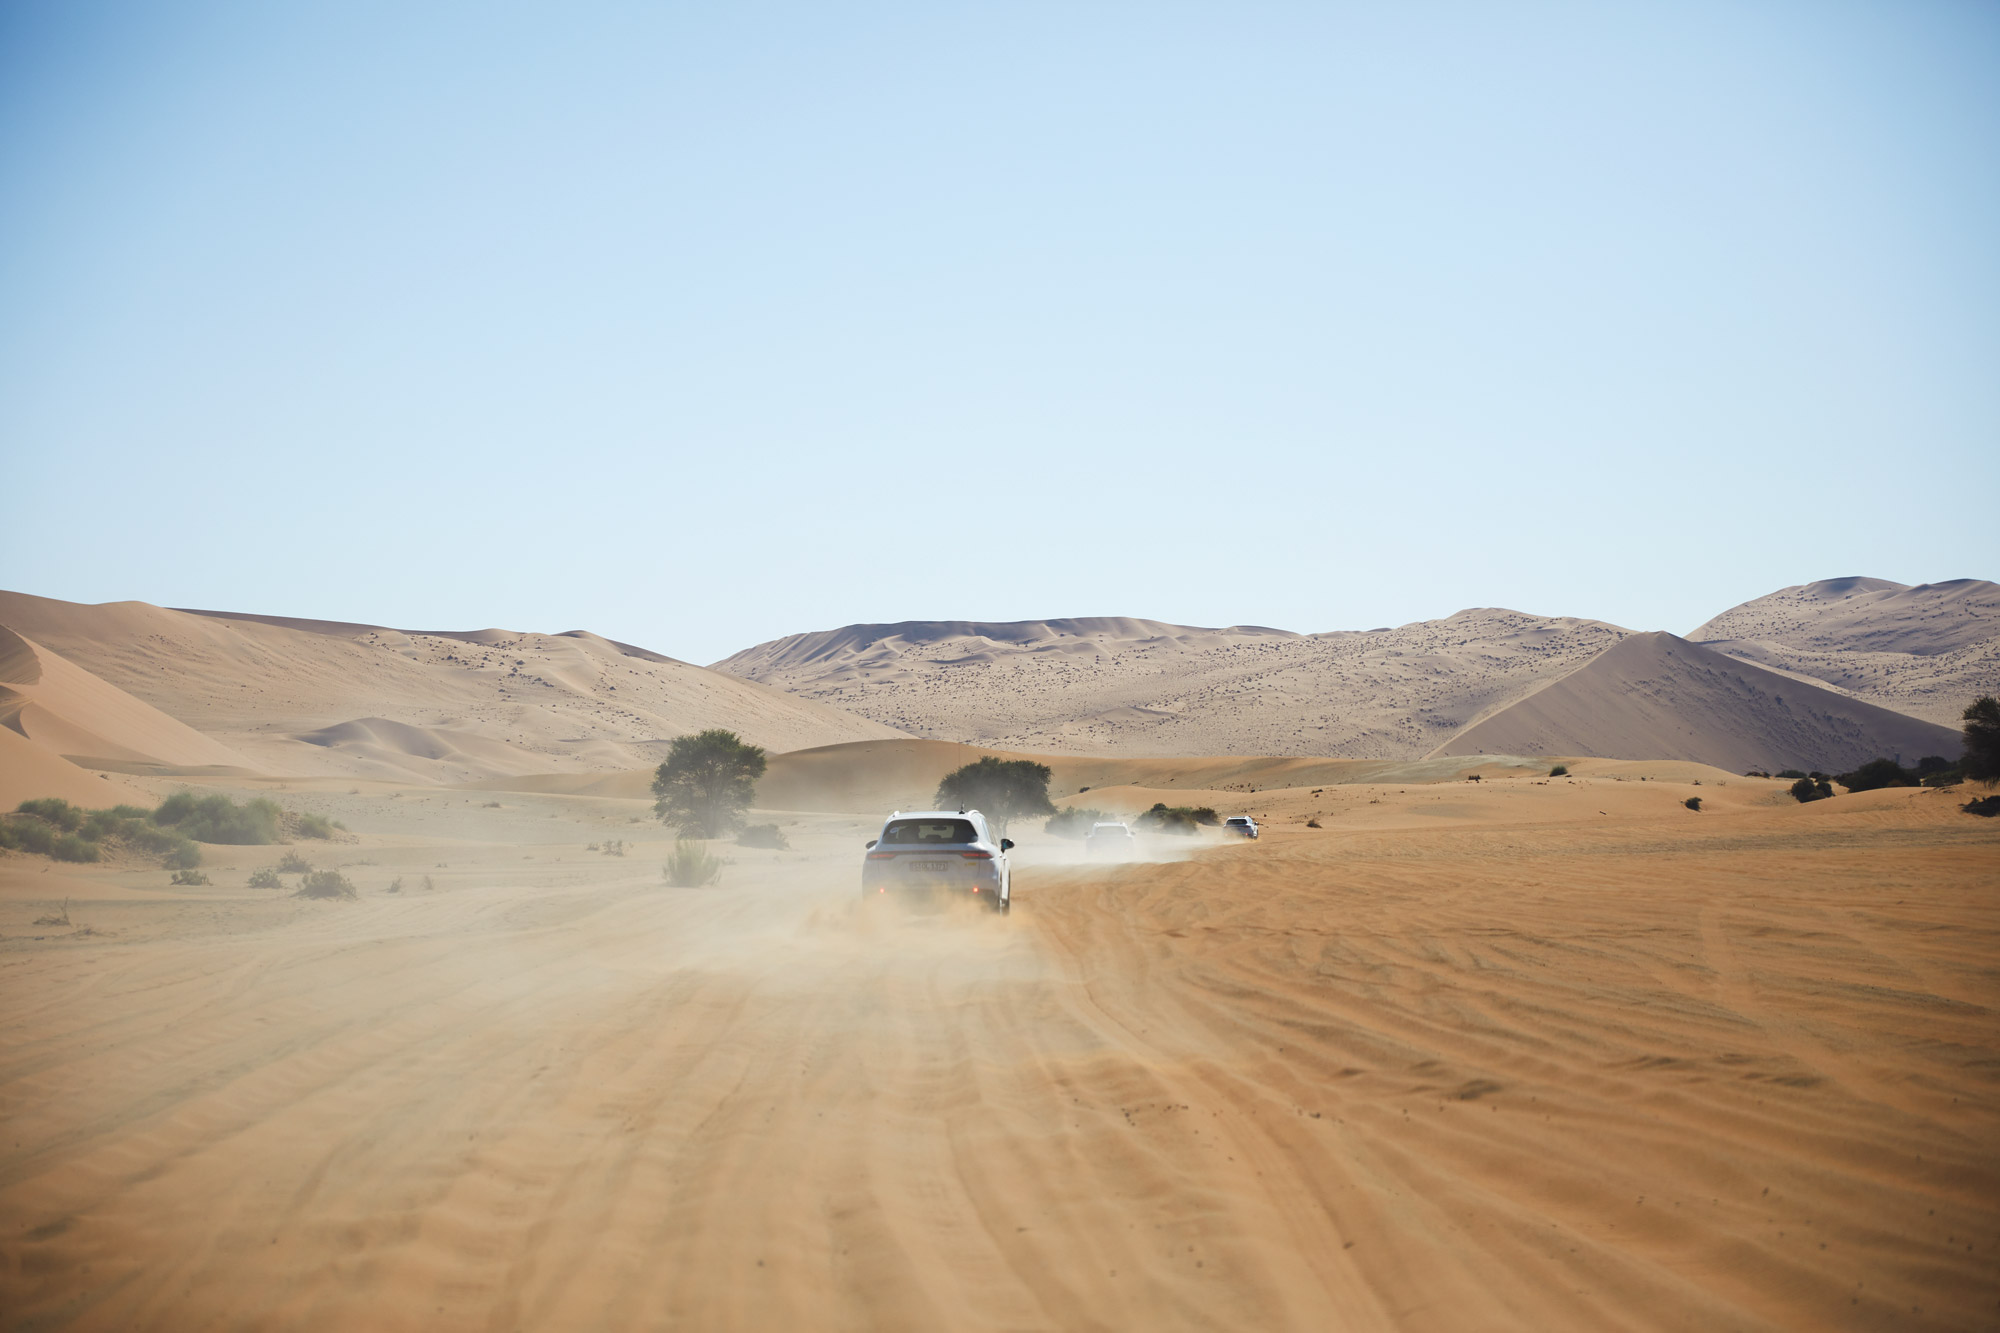 Porsche Cayenne drives through desert, kicking up sand